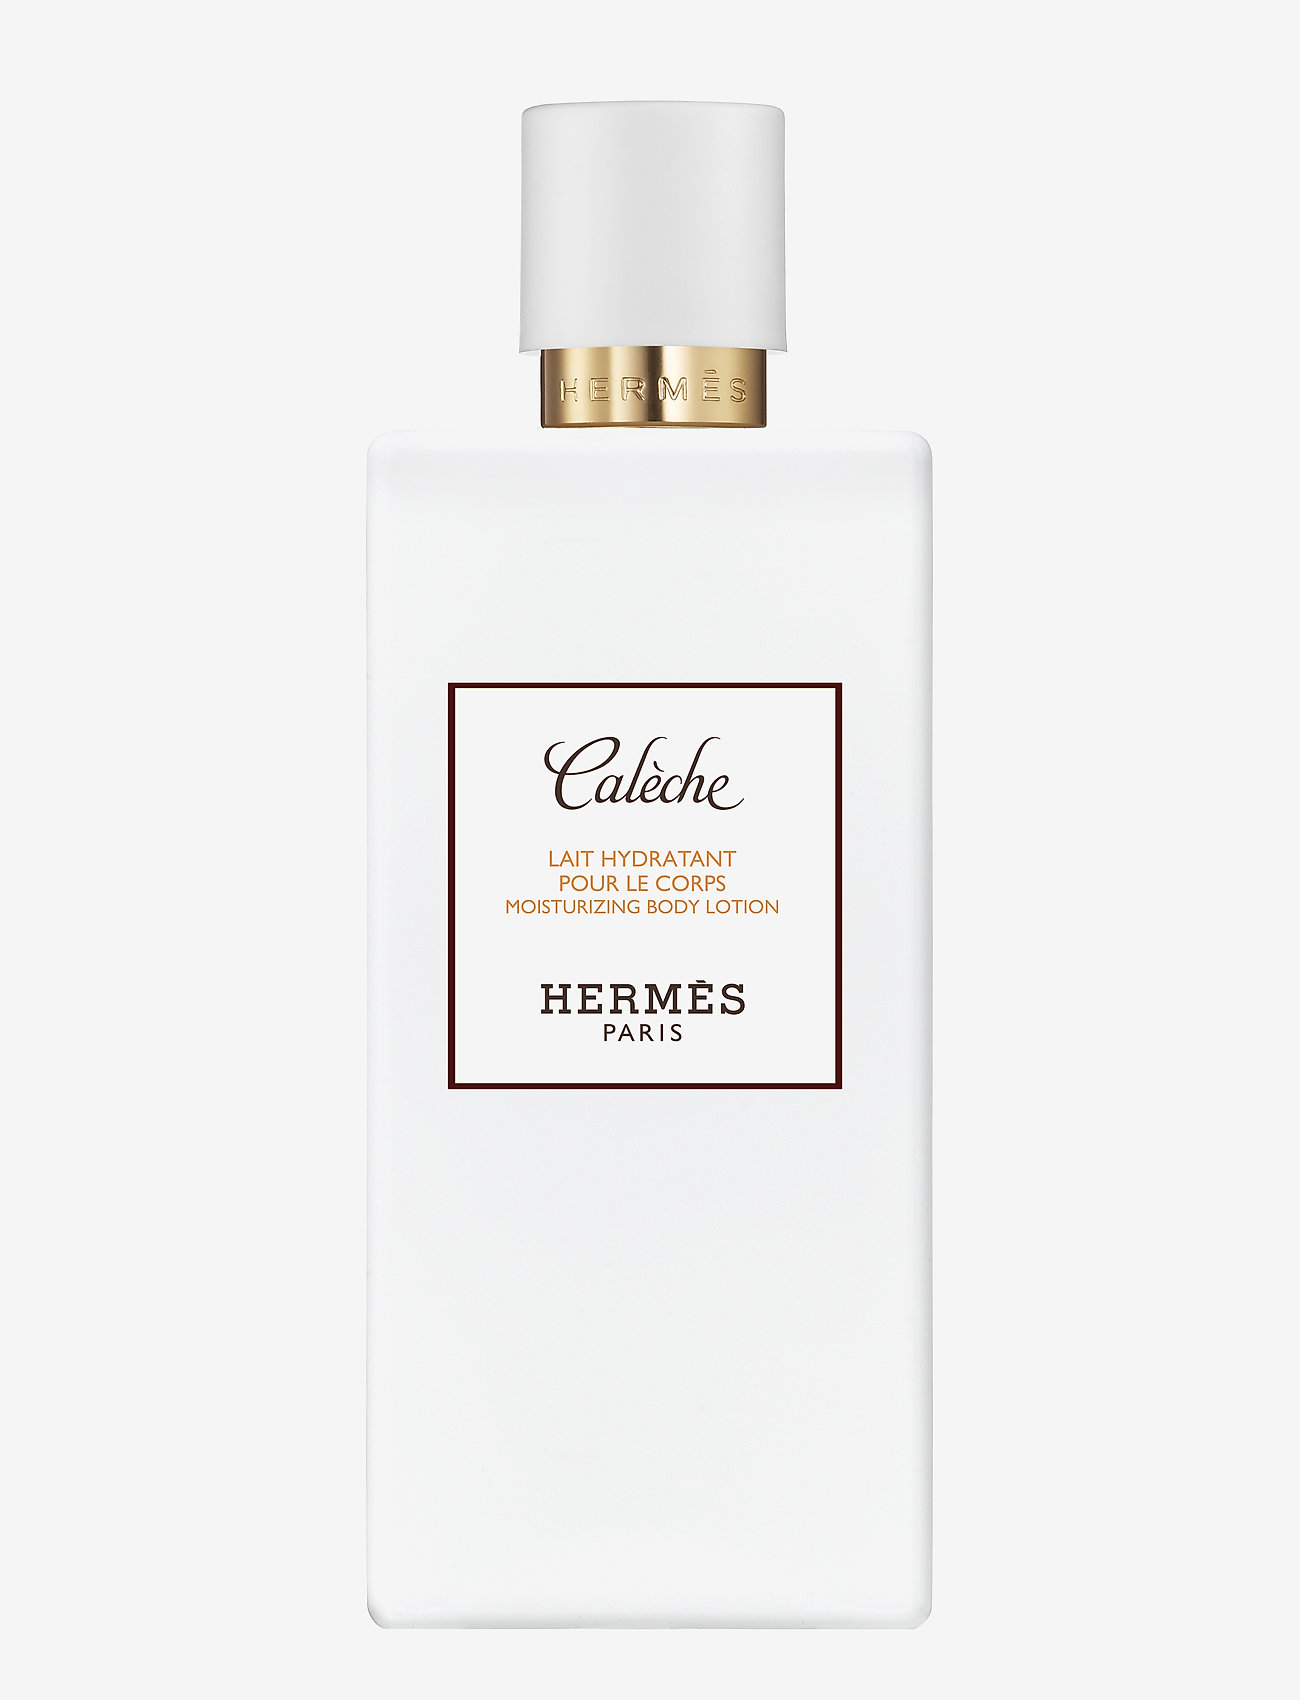 HERMÈS Calèche, Perfumed Body Lotion - Body lotion | Boozt.com